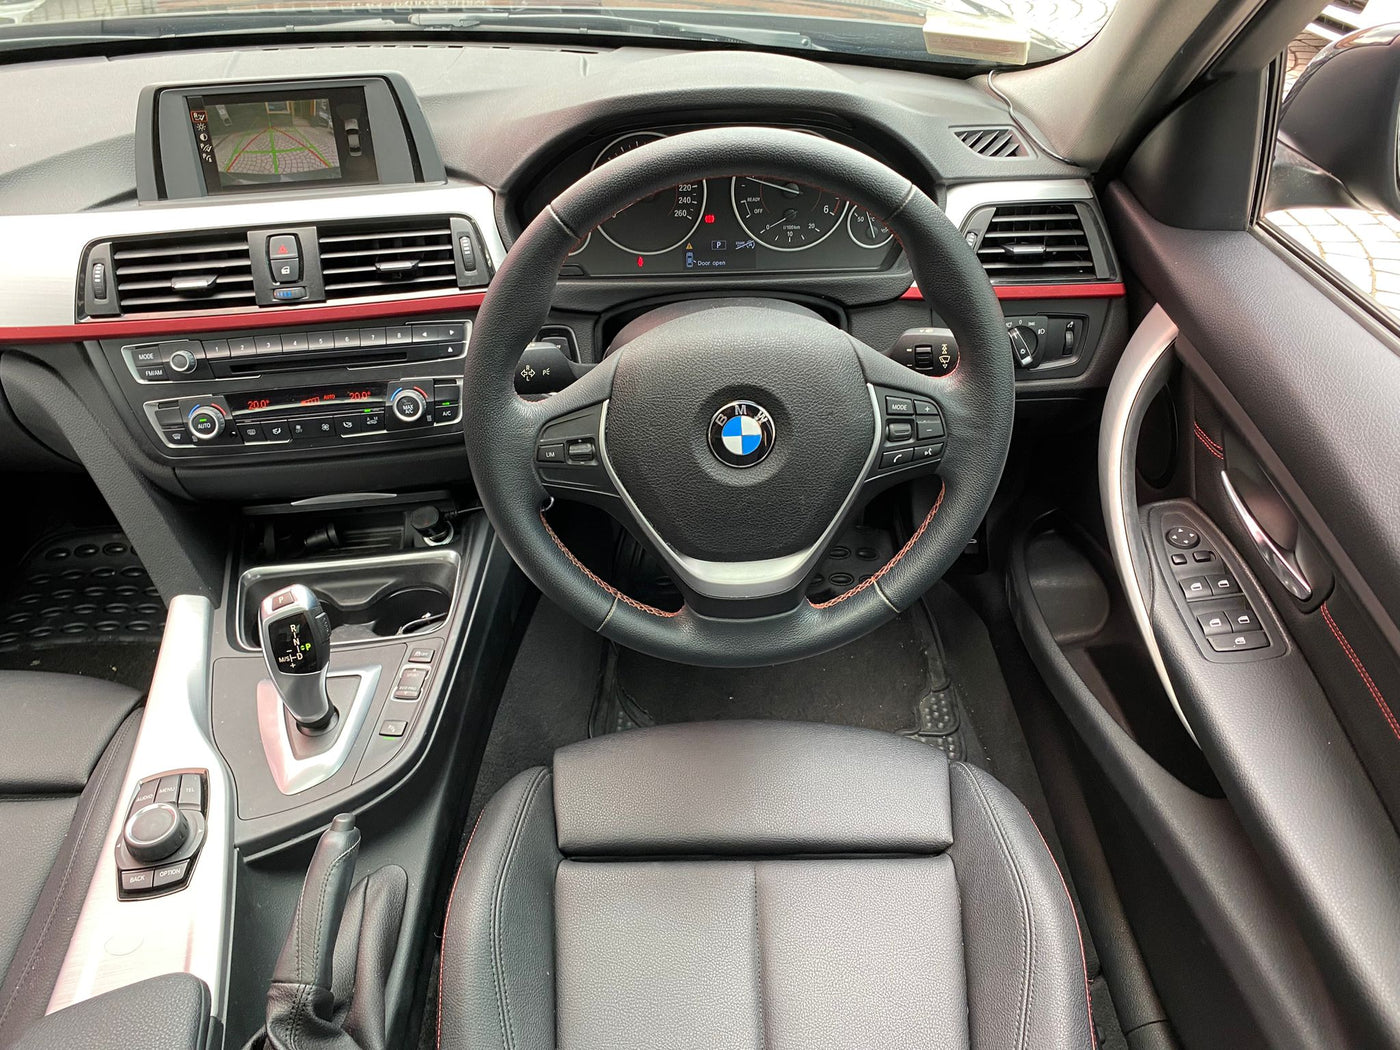 BMW 320D 2014